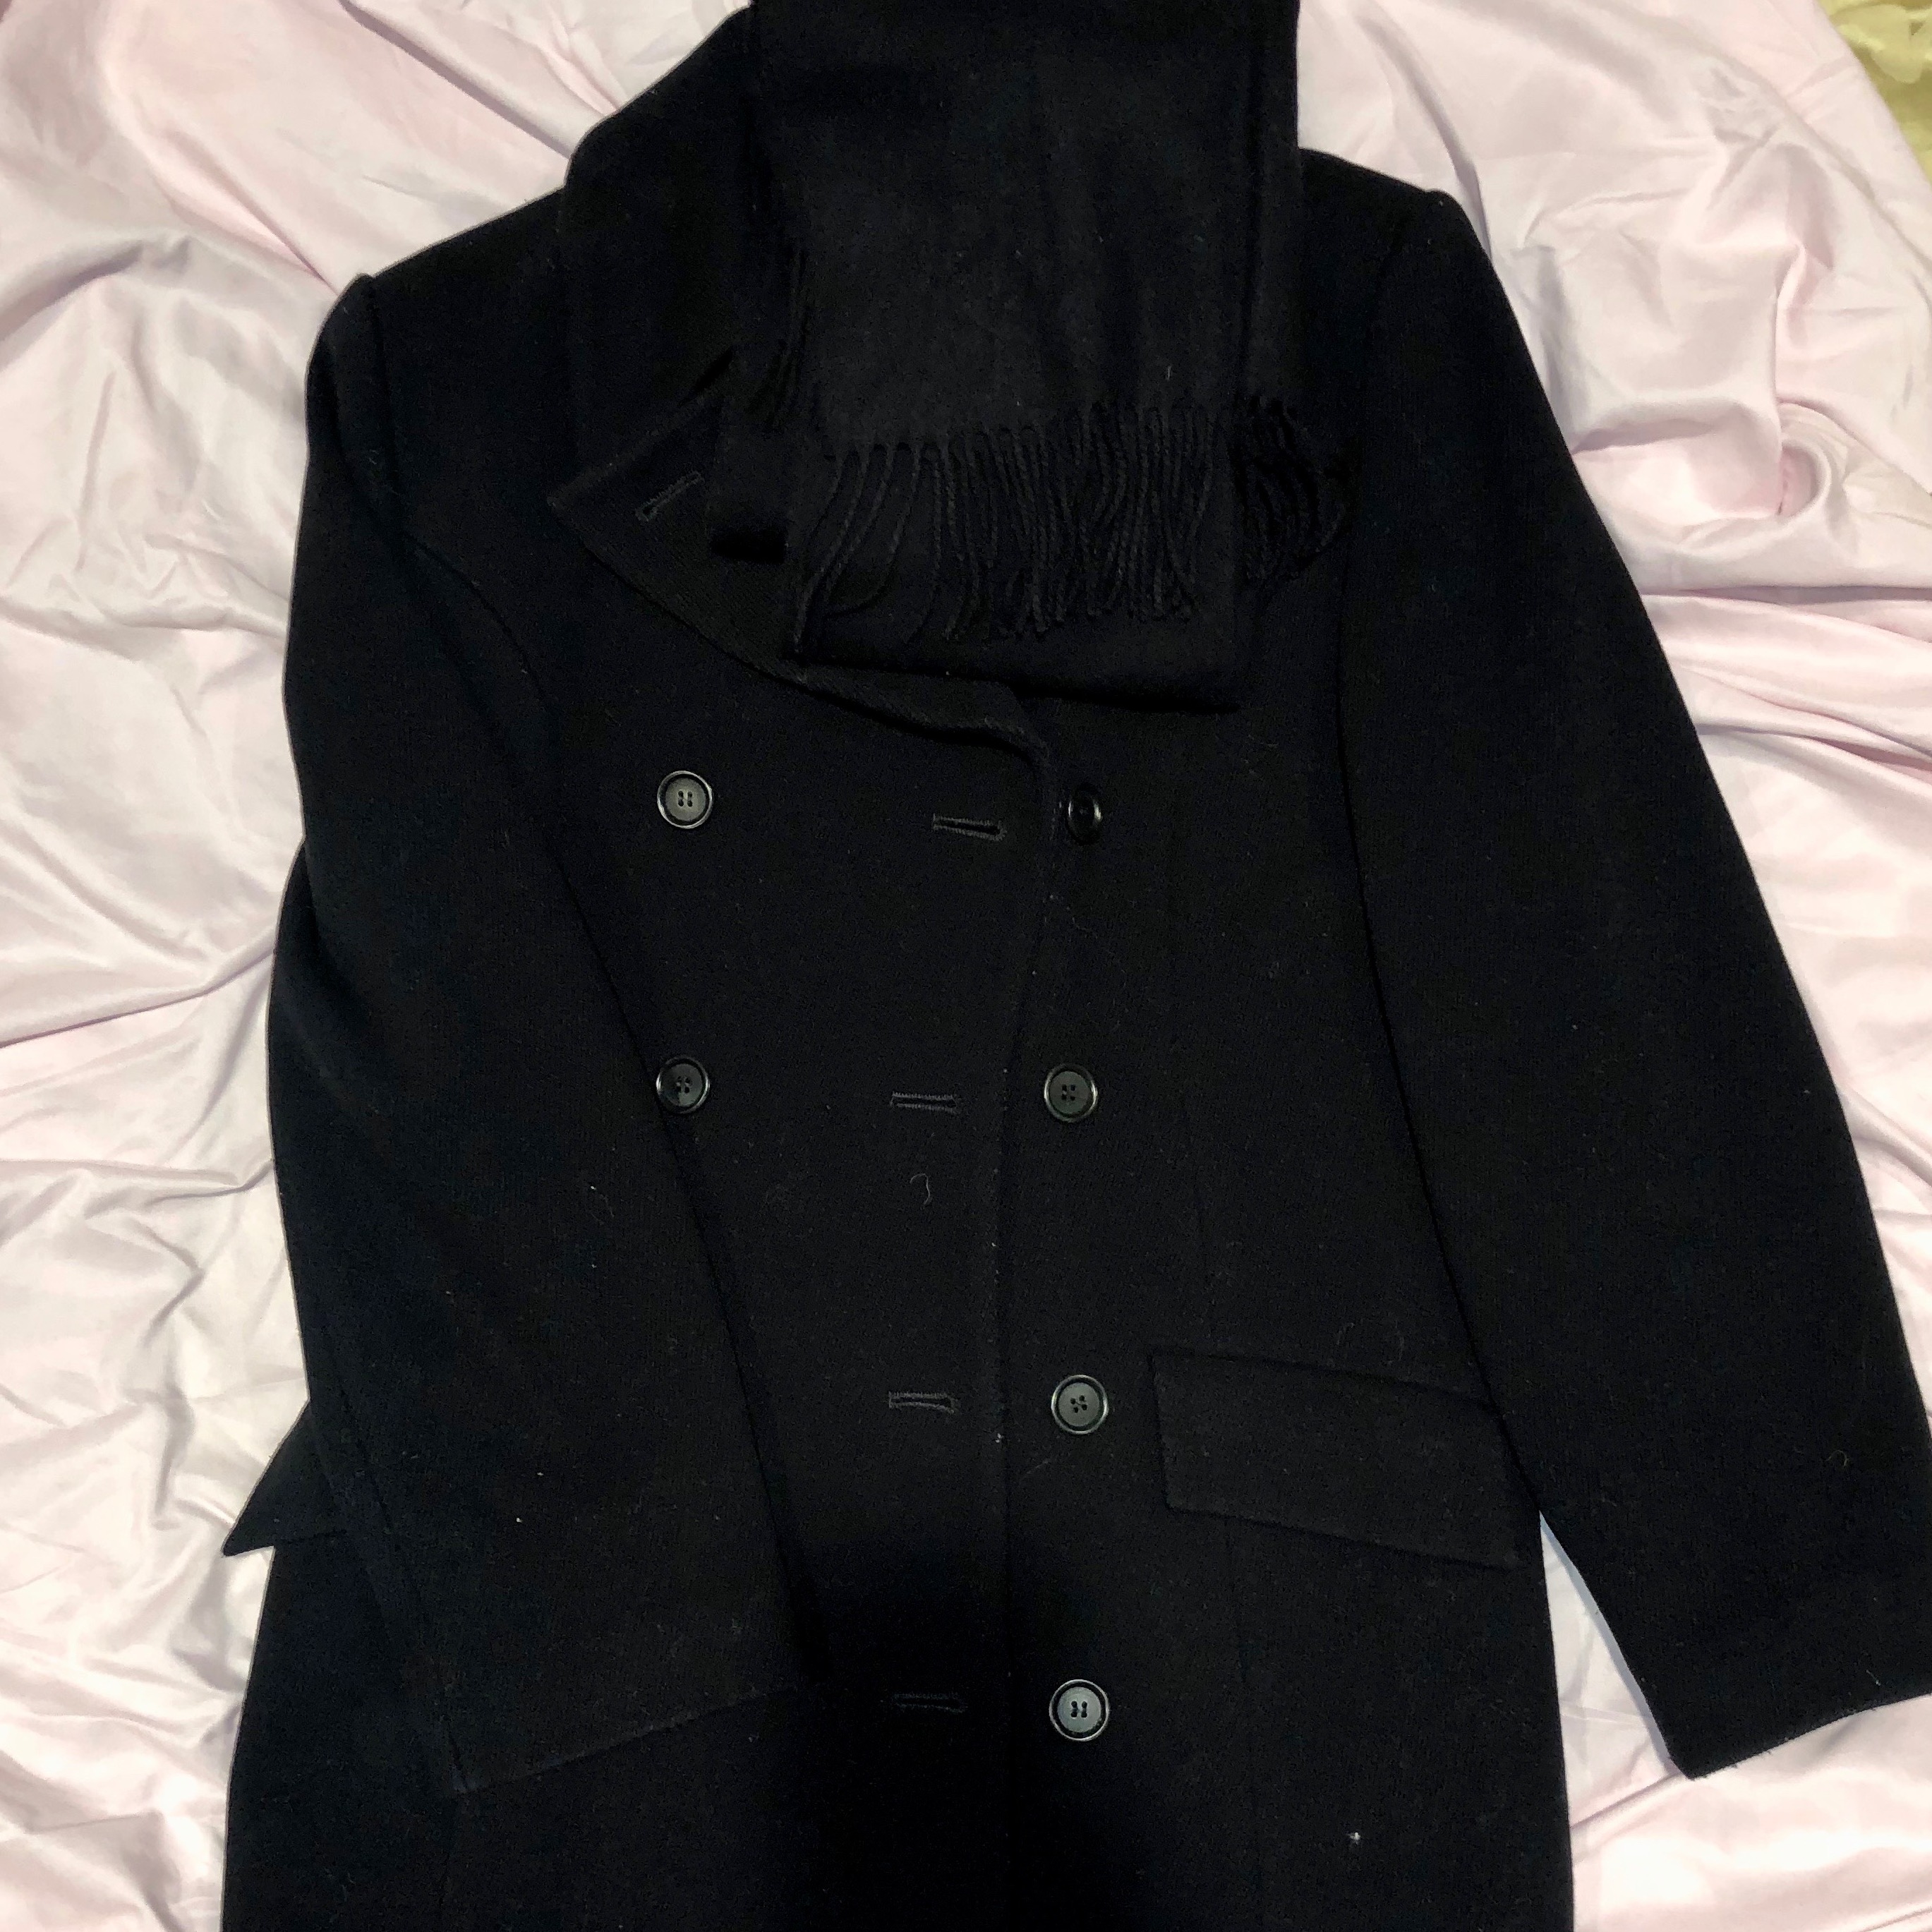 black coat on bed